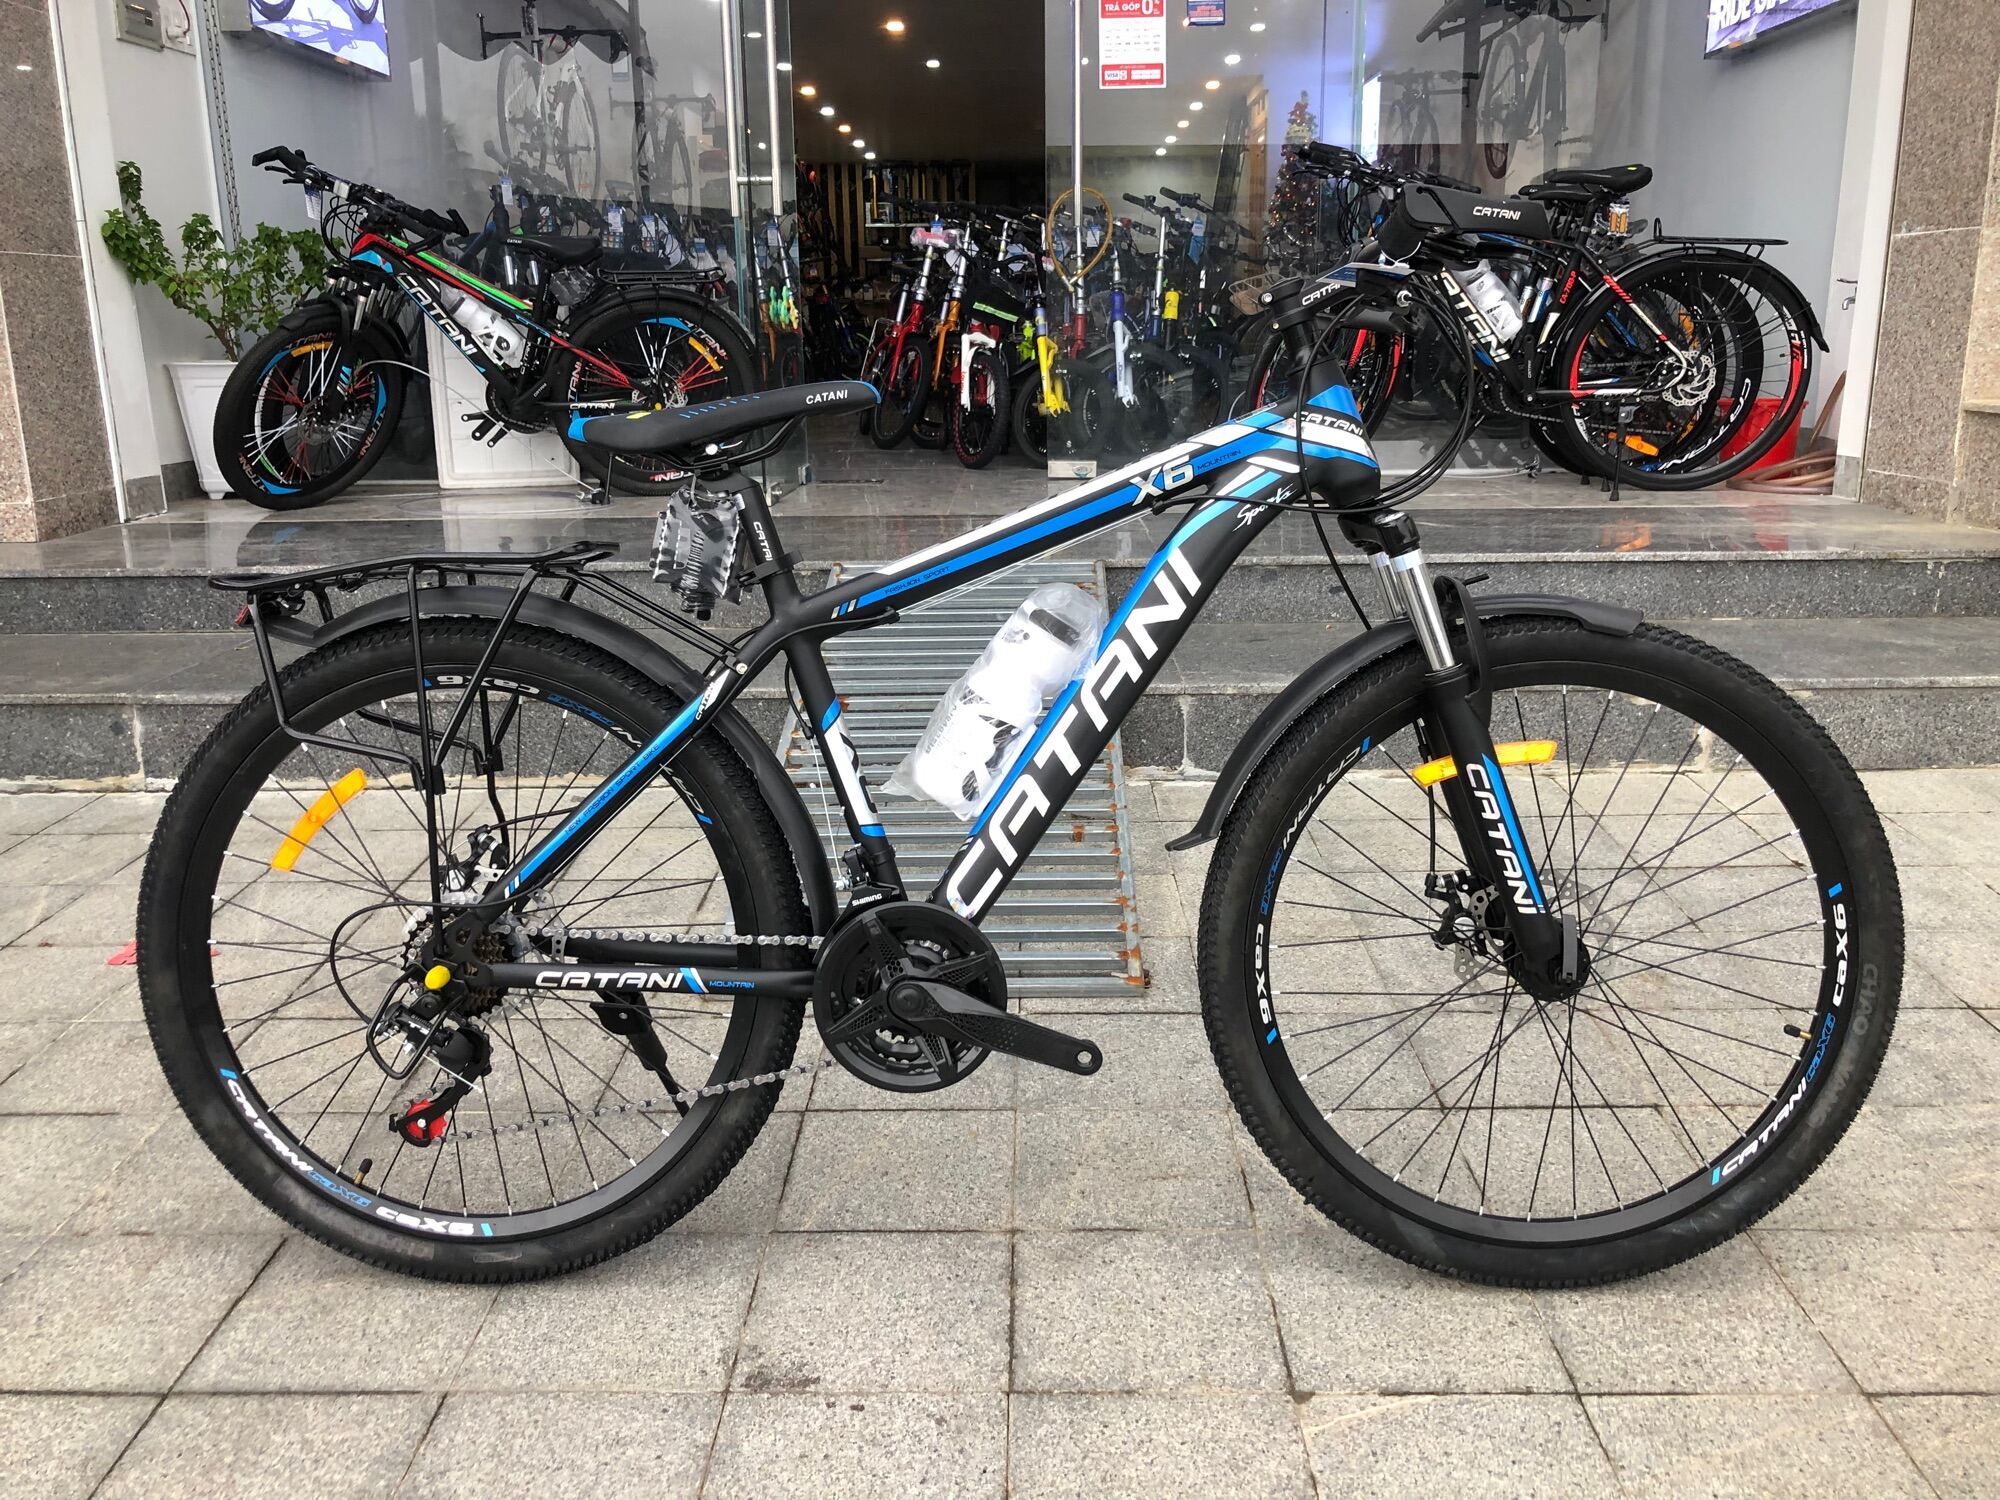 Mua Xe đạp học sinh Catani X6 size 26inch màu đen xanh dương